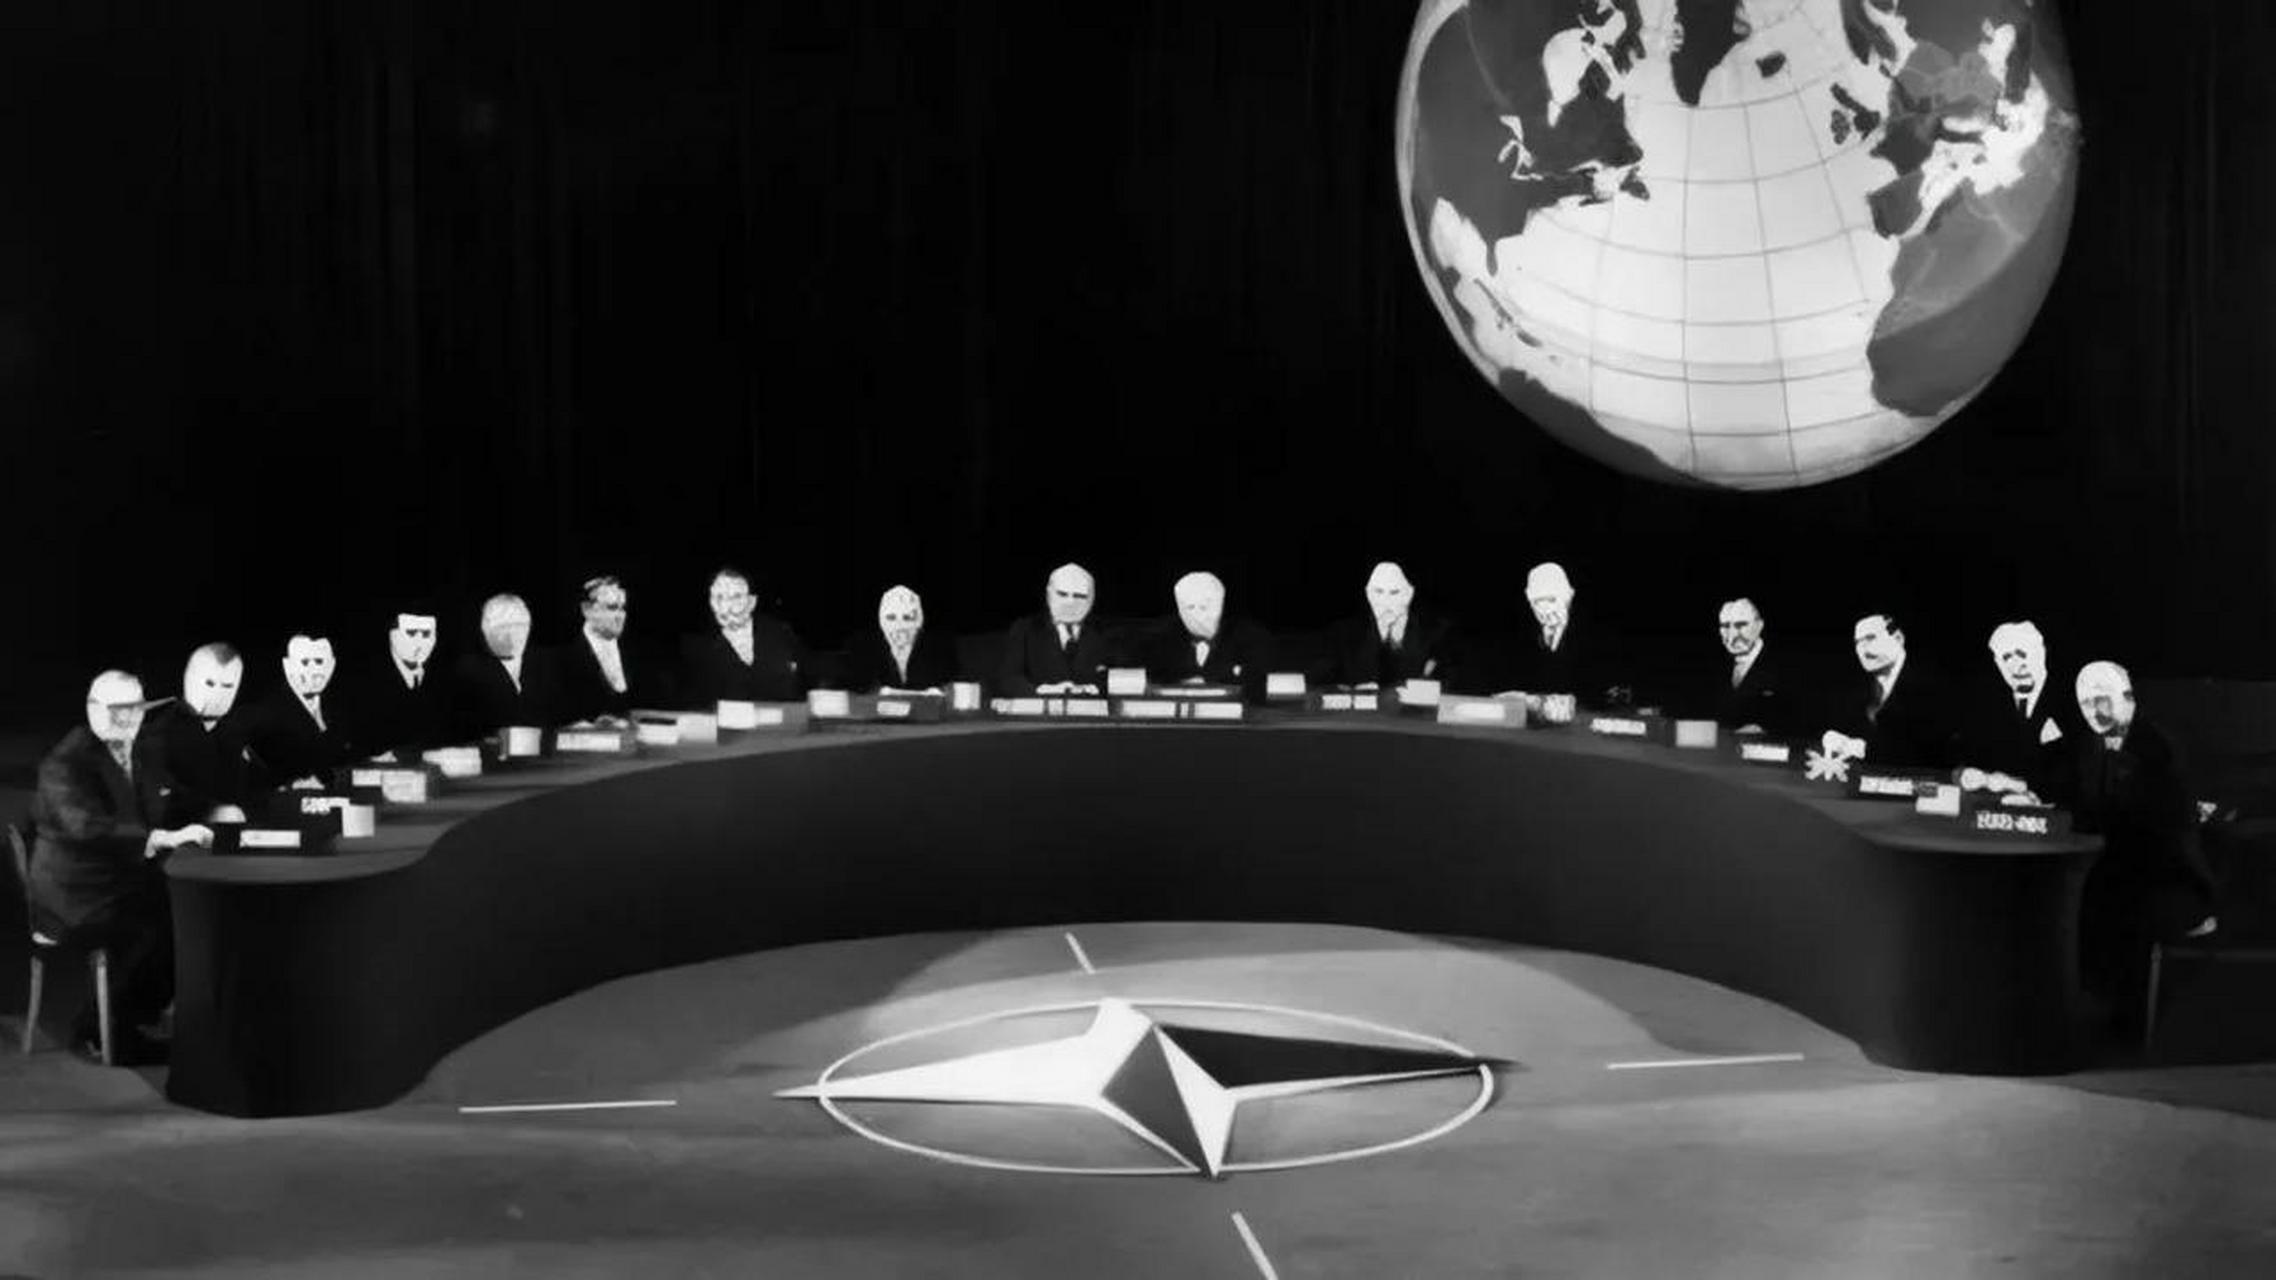 1949年4月4日,12个国家签署了北大西洋公约,从而成立了北约